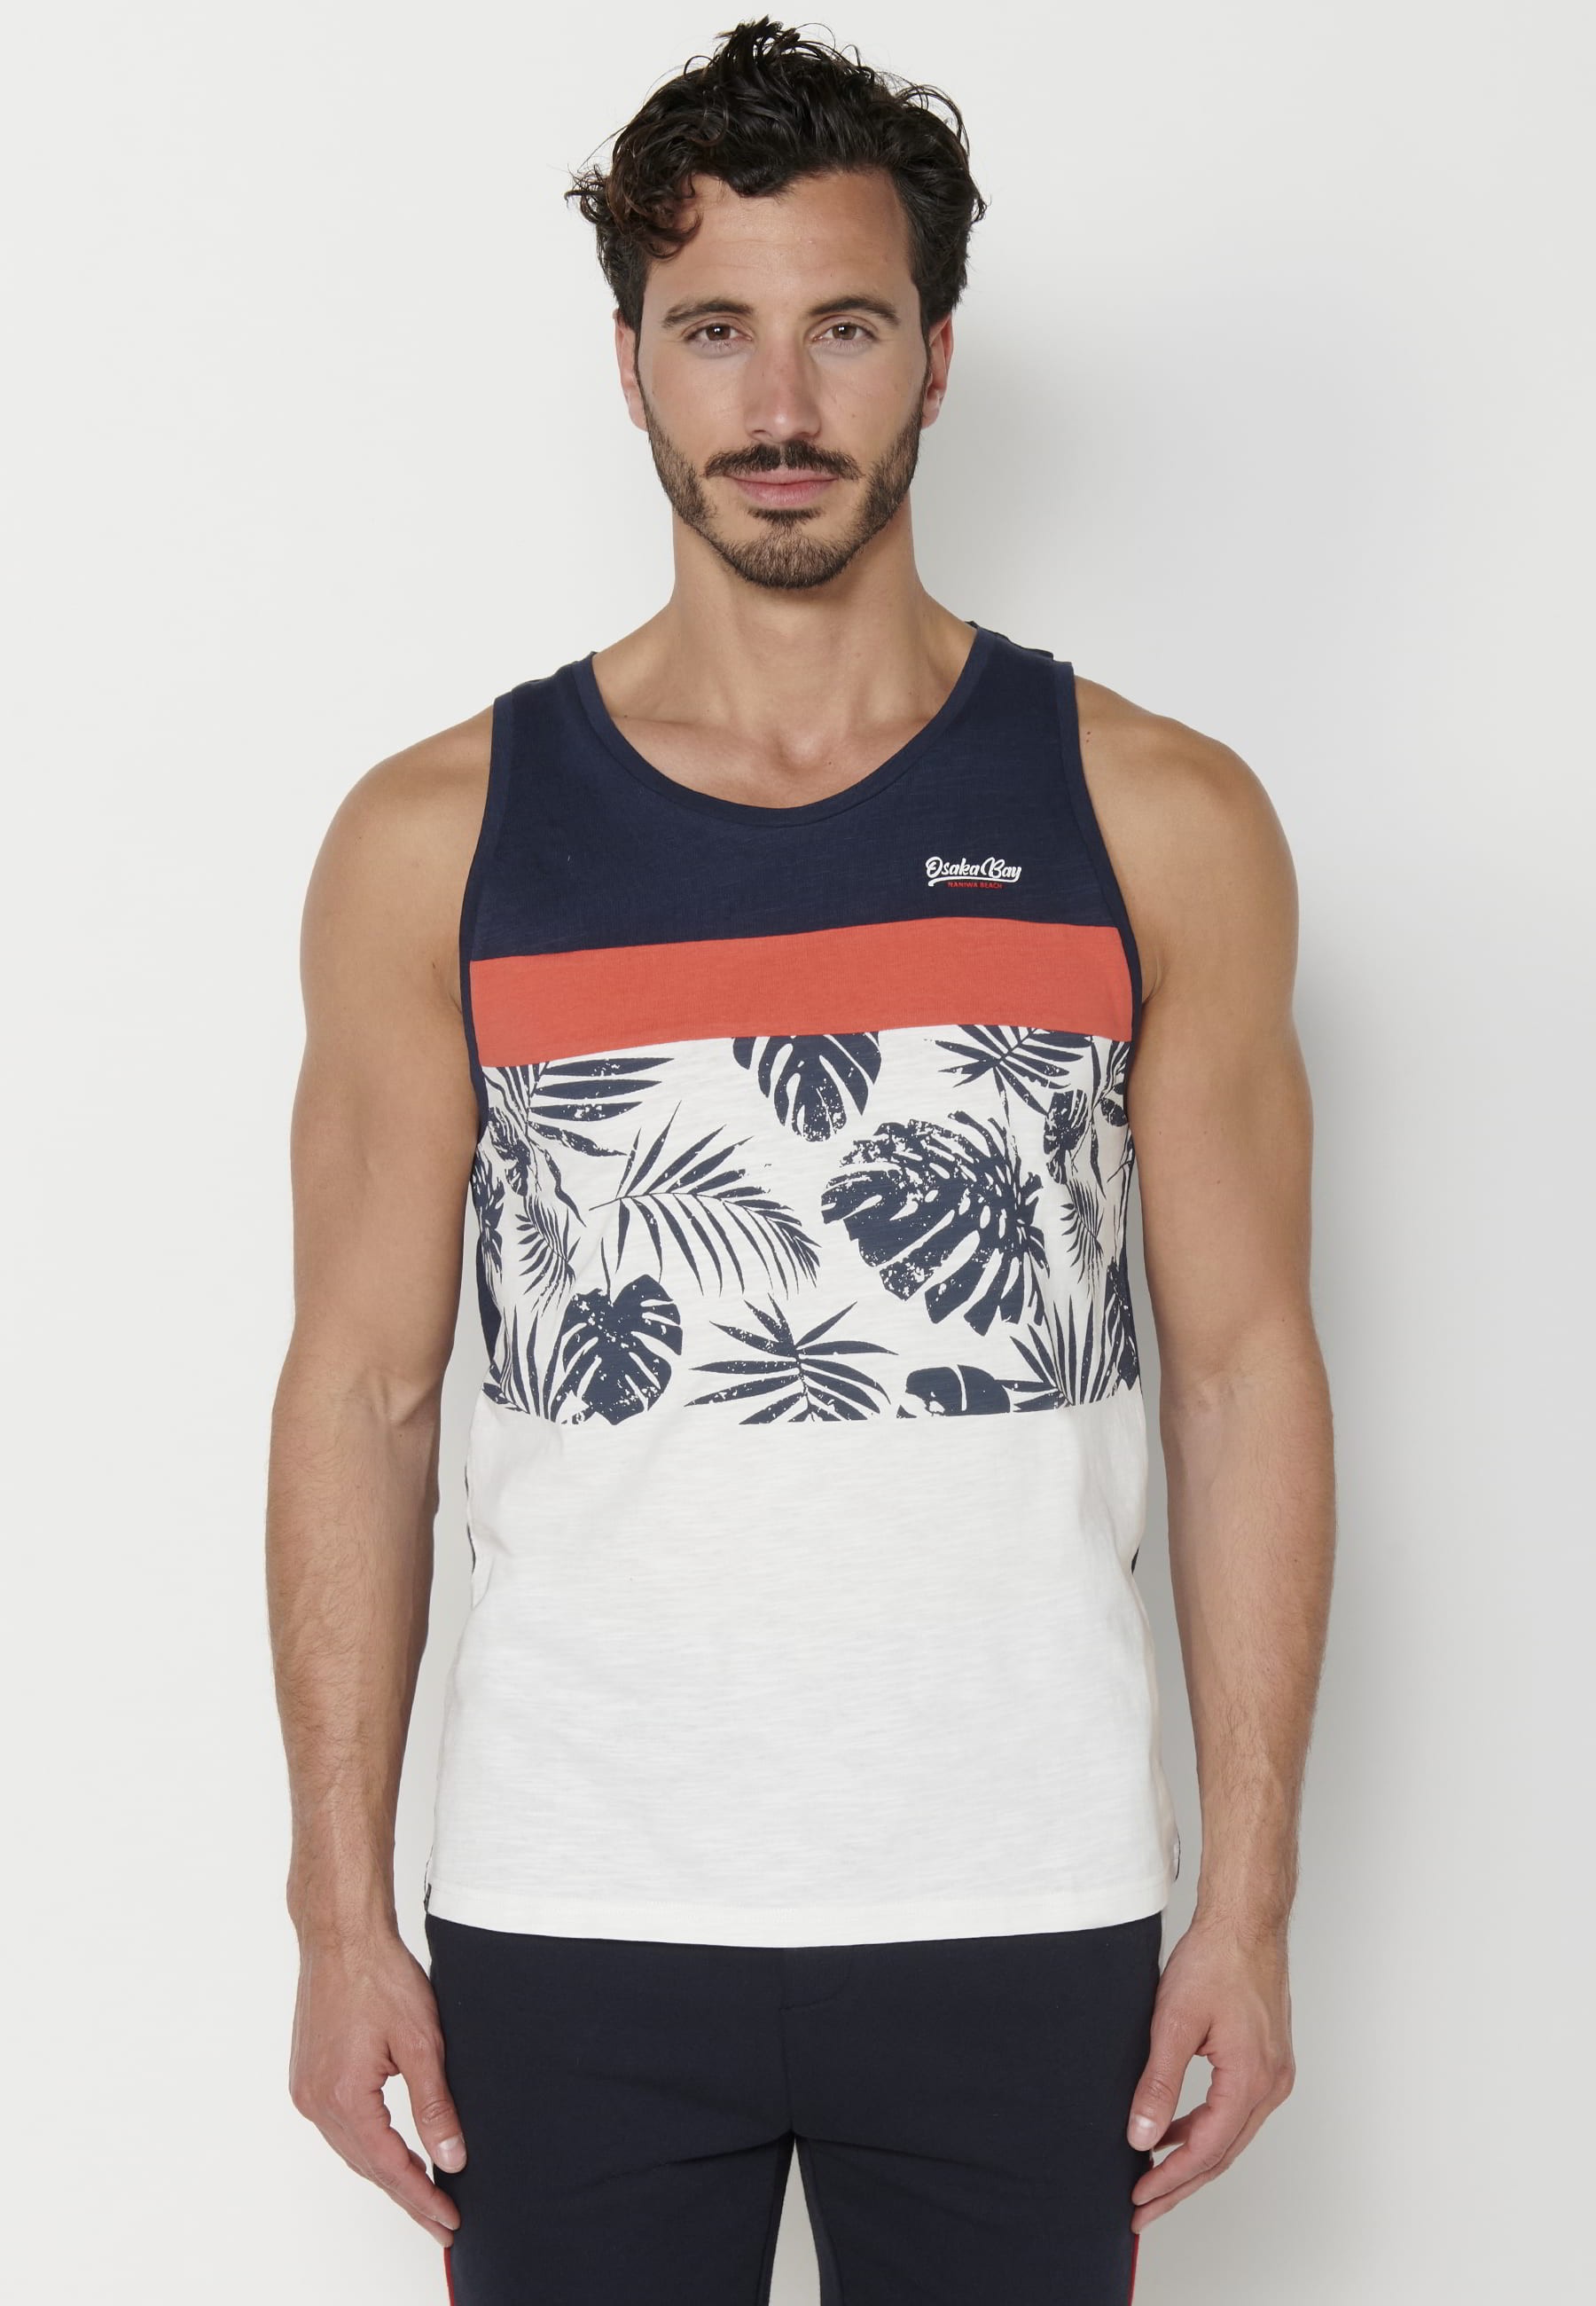 Camiseta sin mangas de Algodón con estampado delantero color Navy para Hombre